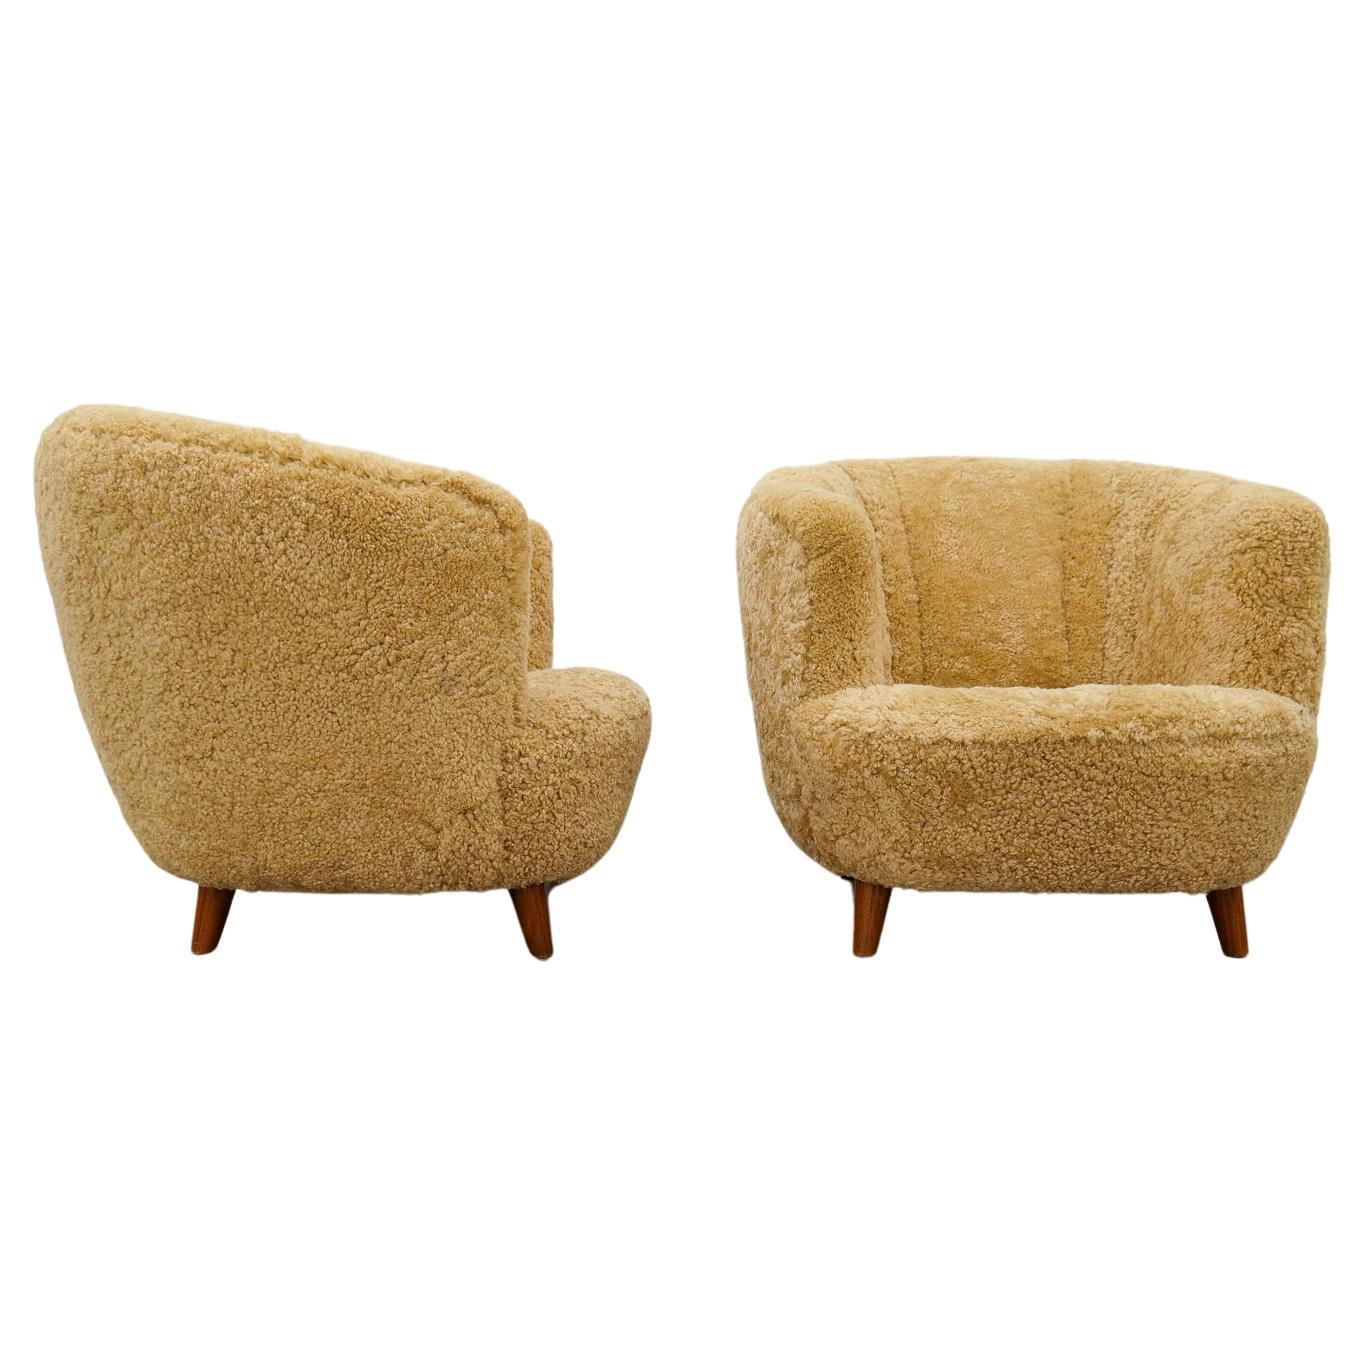 Art Deco Scandinavian Lounge Chairs in Honey Sheepskin Shearling, 1940s